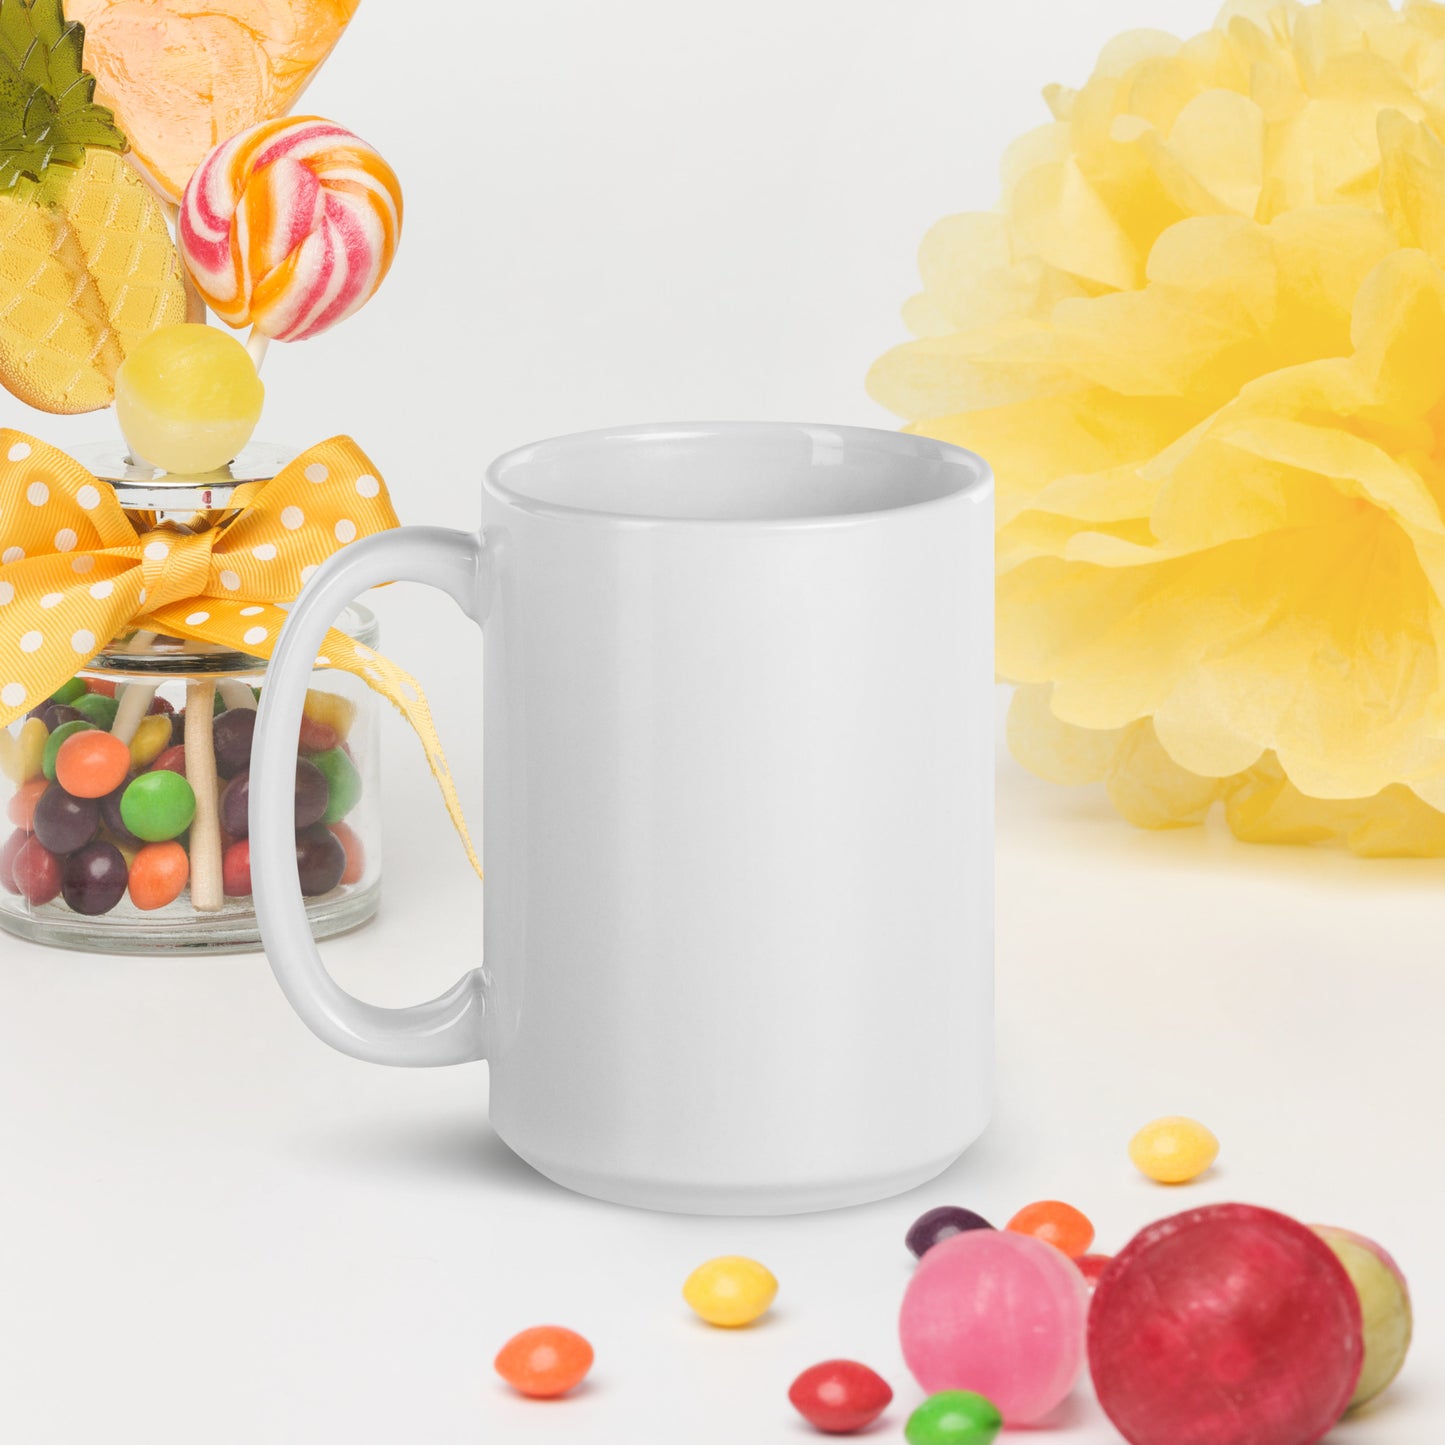 Super Nana white glossy mug - Pink Print